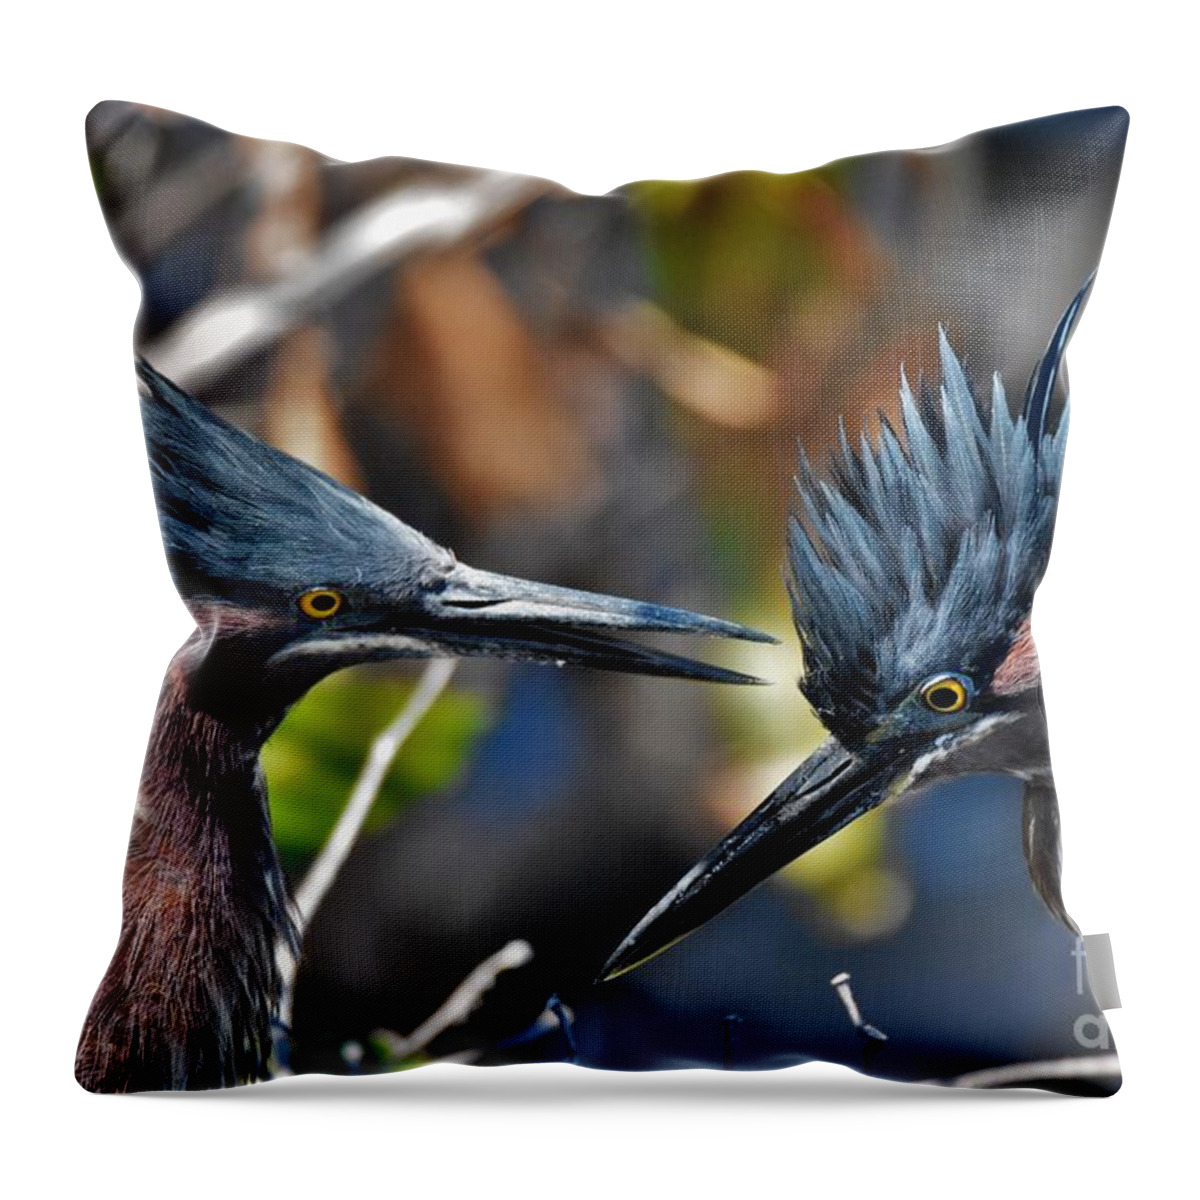 Little Green Herons Throw Pillow featuring the photograph Bird Love by Julie Adair